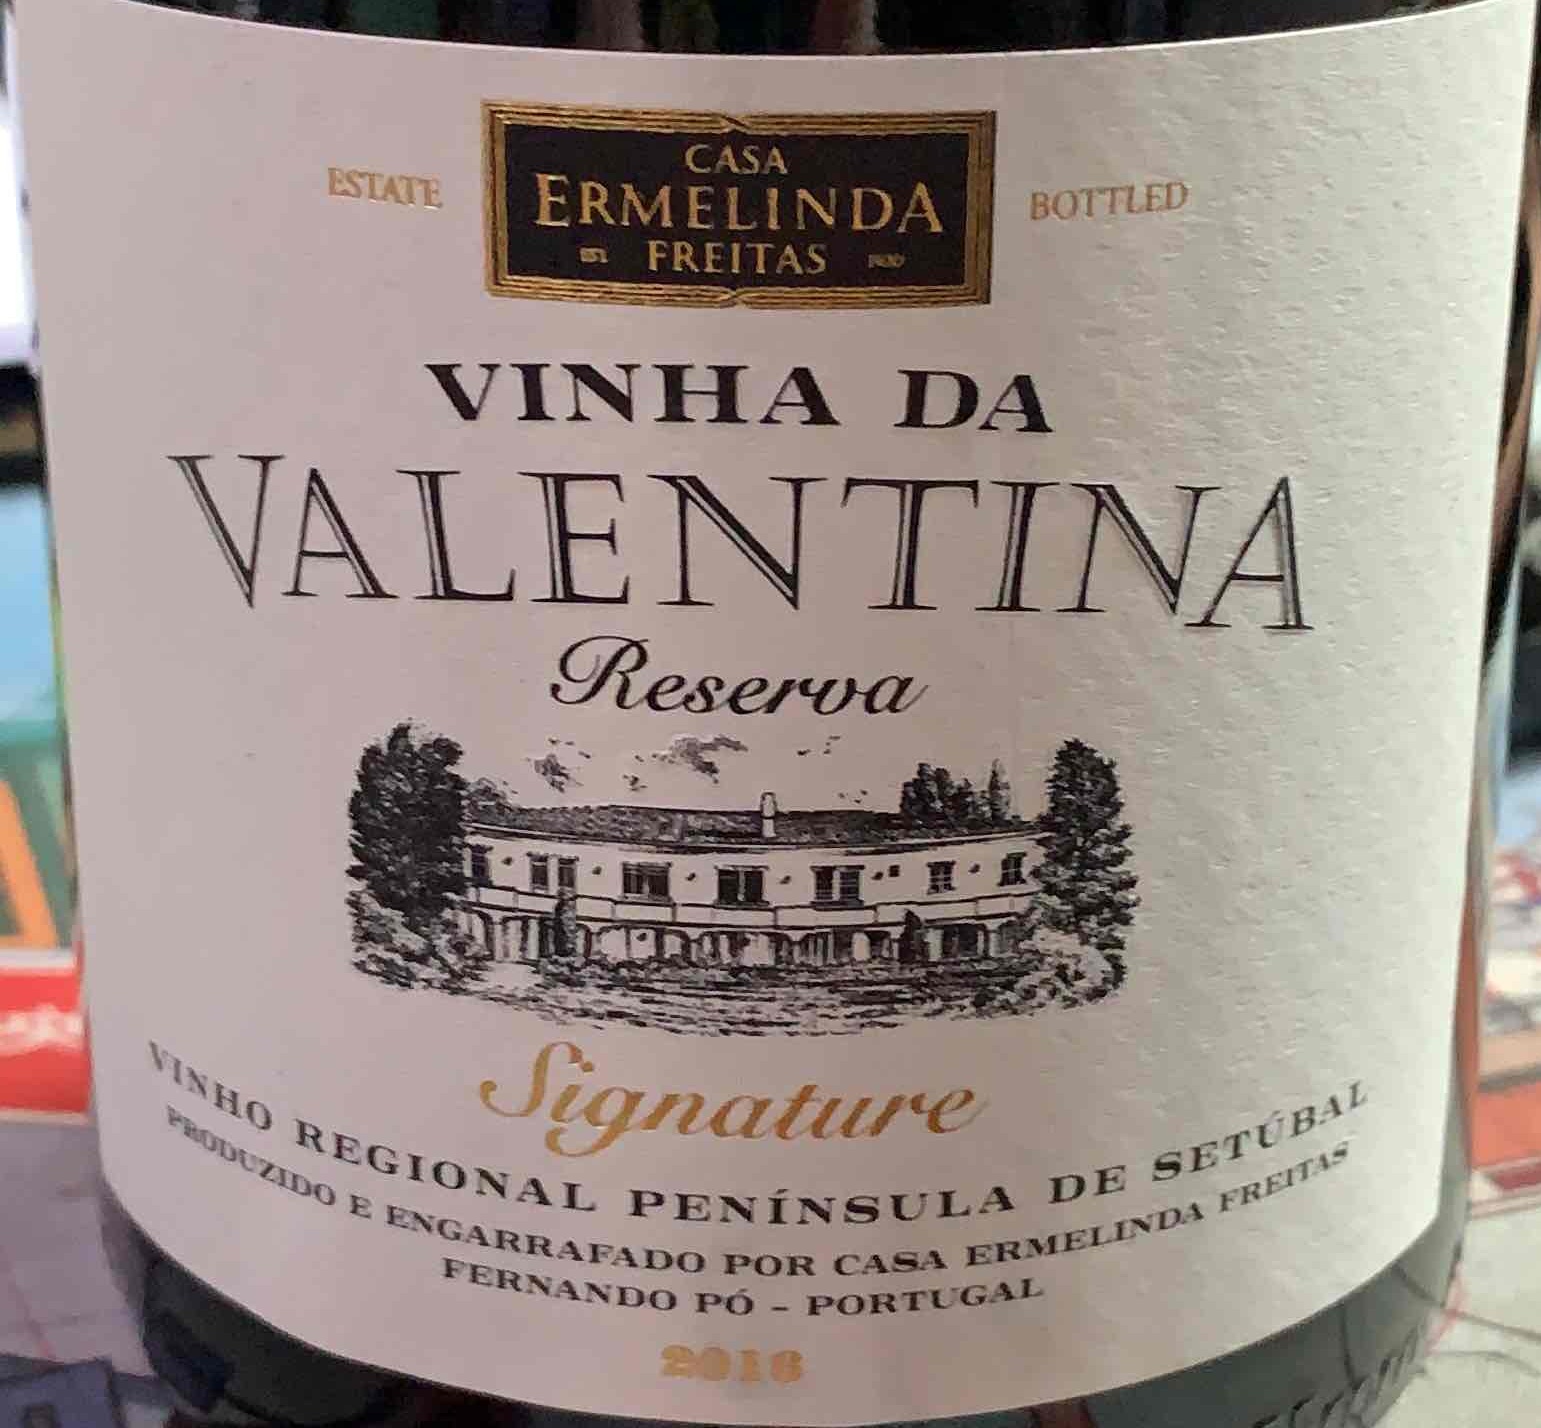 Casa Ermelinda Freitas Vinha da Portugal-埃尔梅琳达·弗雷塔斯之家酒庄葡萄酒-价格-评价-中文名-红酒世界网 Signature Reserva Tinto, Peninsula Setubal, de Valentina